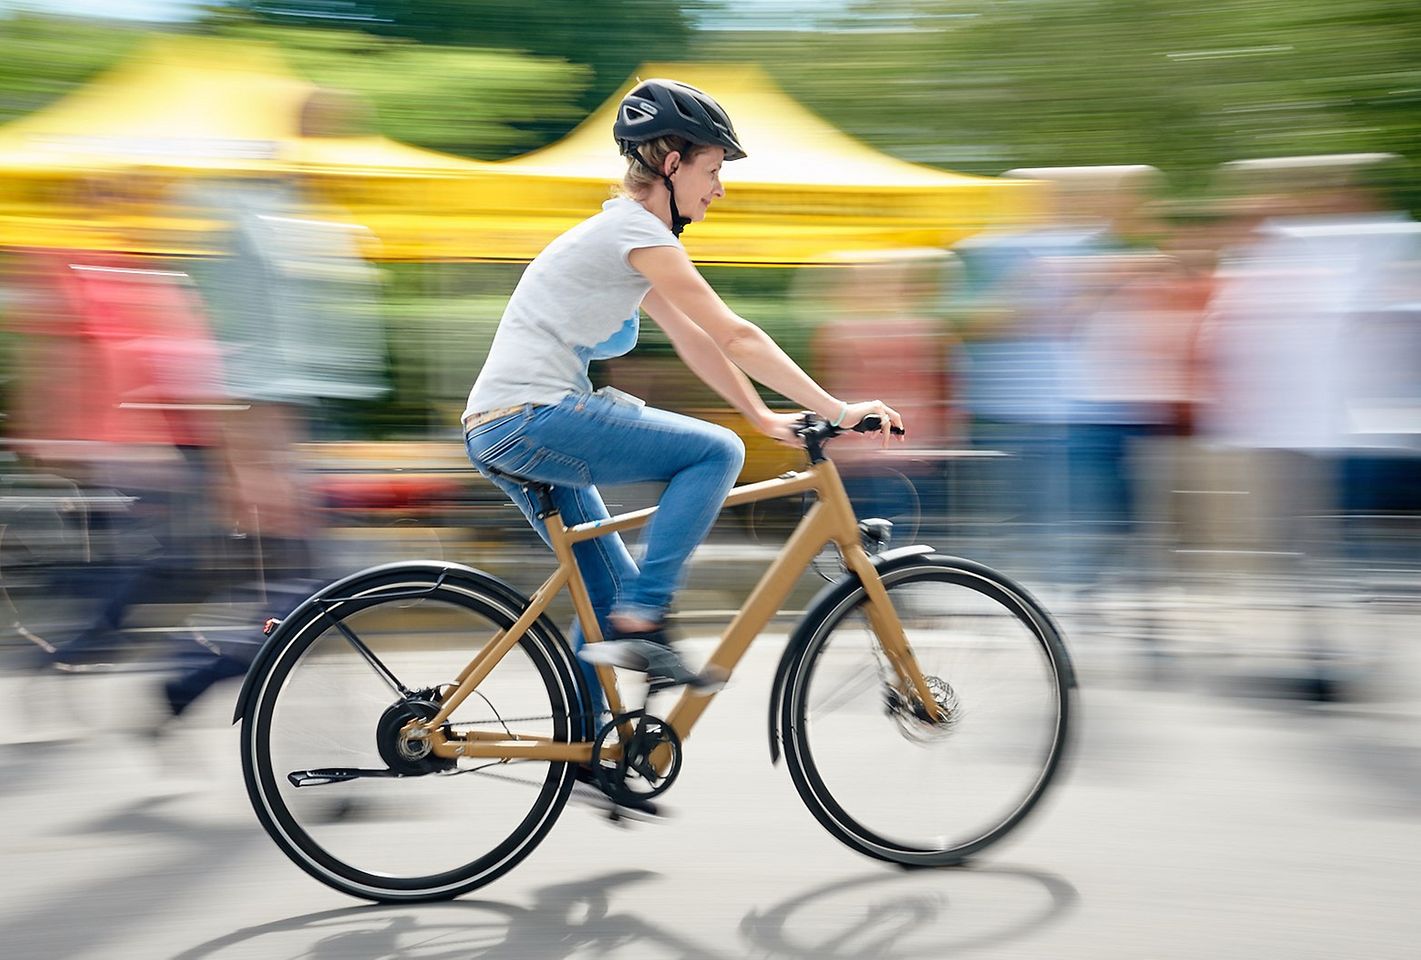 Ab sofort können Henkel-Mitarbeiter in Deutschland Dienstfahrräder leasen – eine umweltschonende Transportalternative